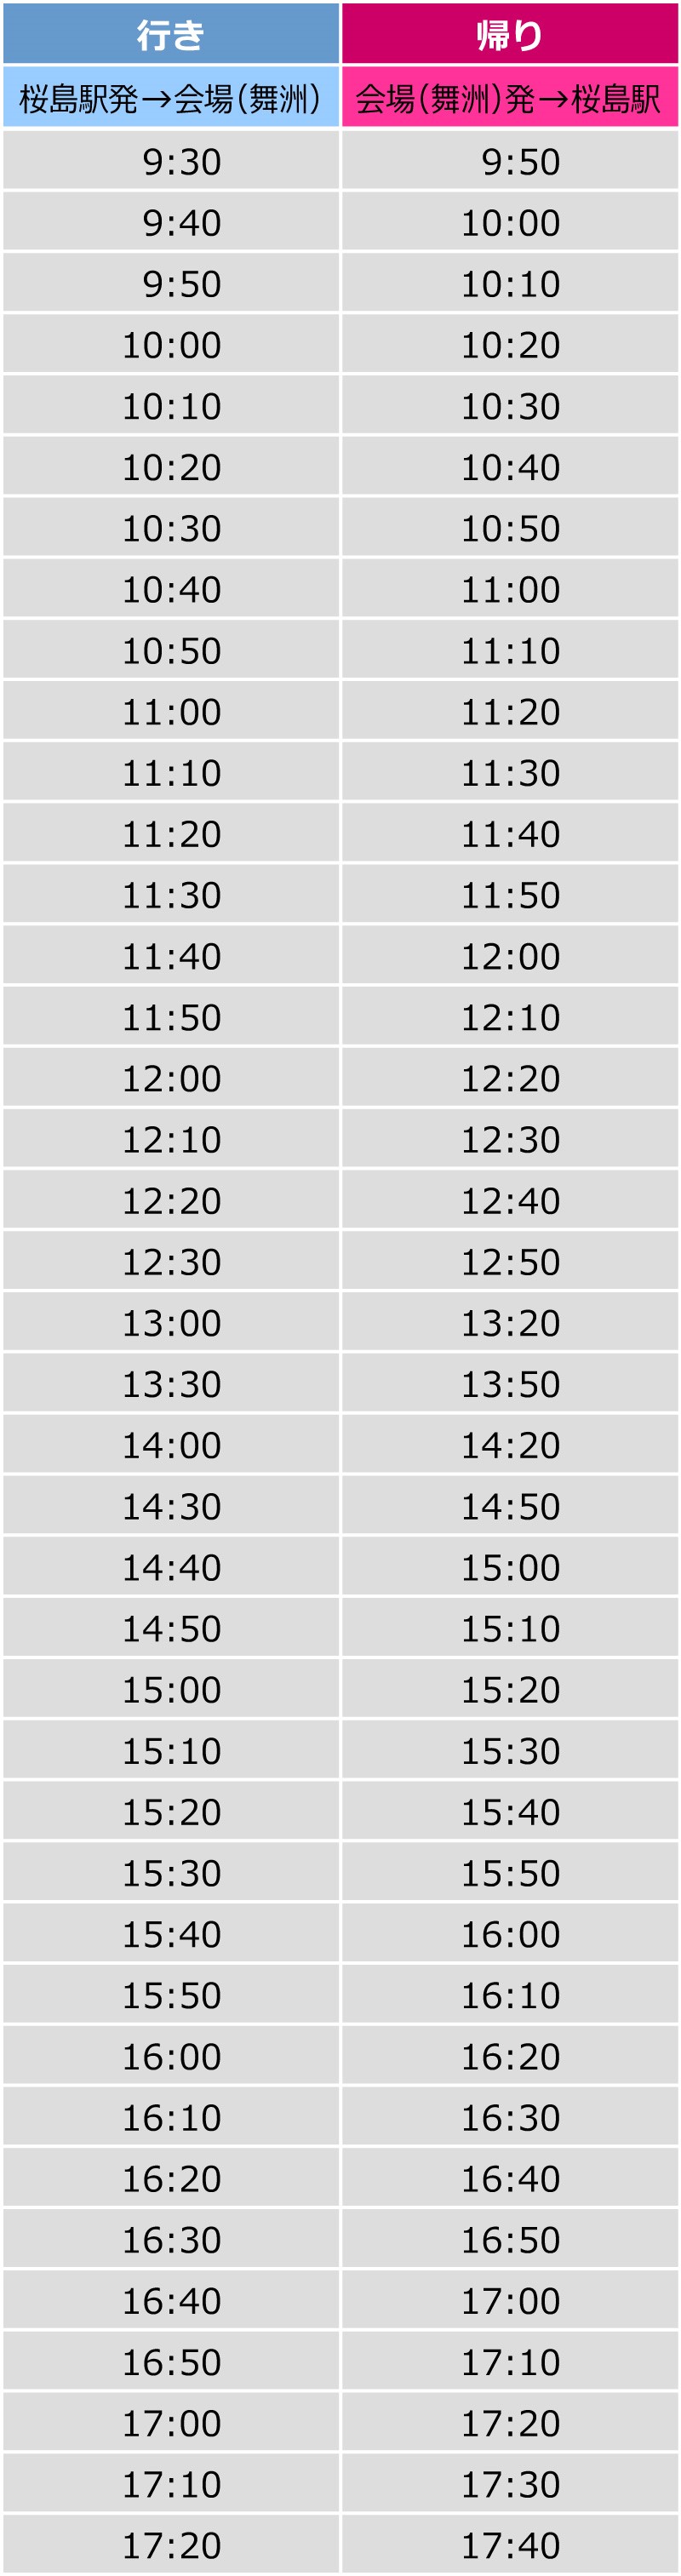 バブルランシャトルバス時刻表